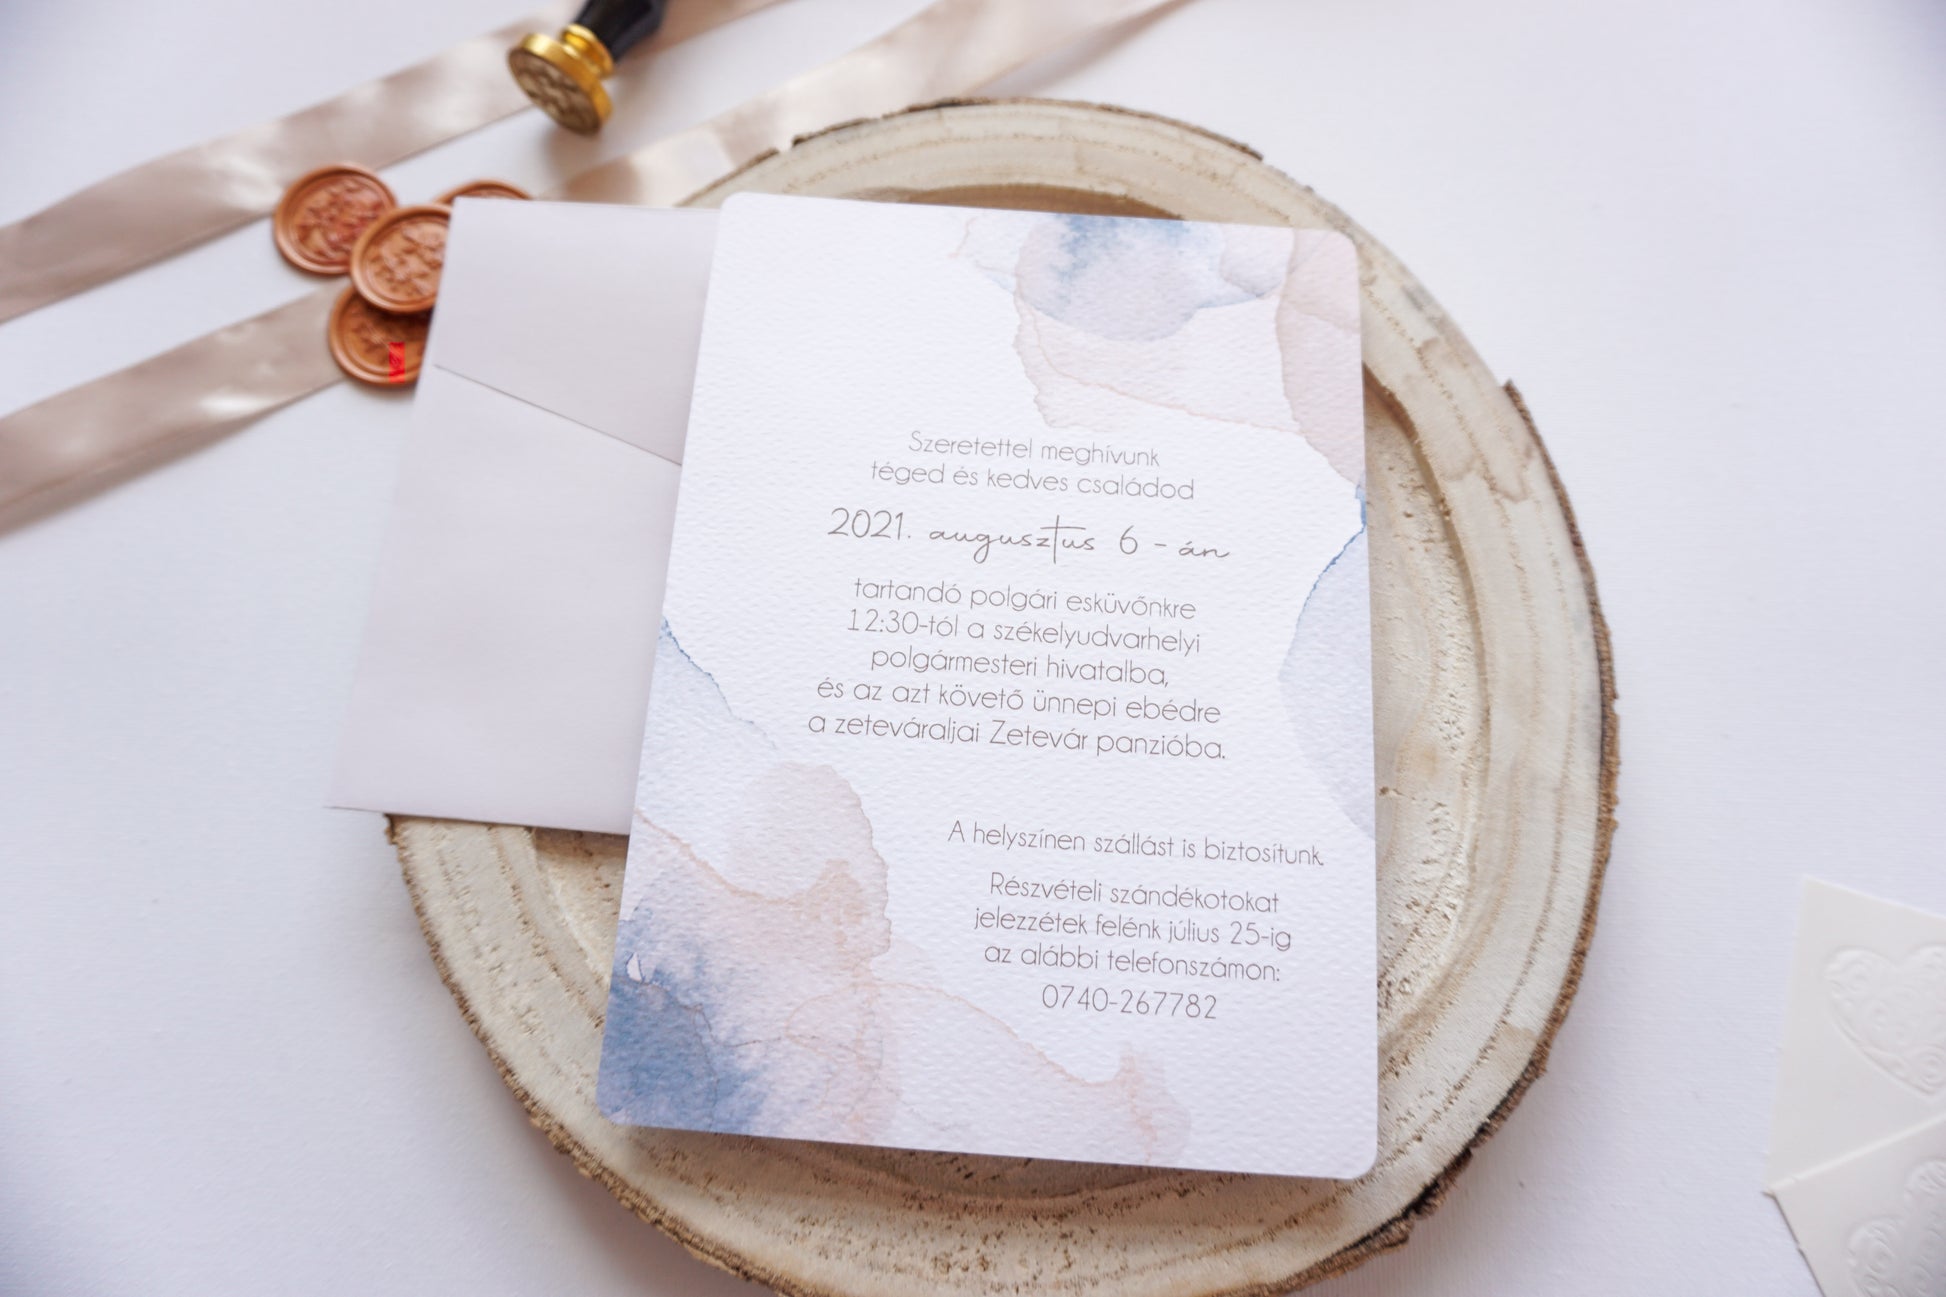 Esküvői meghívó EM06 - Két oldalas Akvarell hatású esküvői meghívó - Erdélyi Esküvői Meghívók - Wedding invitation EM06 - Két oldalas Akvarell hatású esküvői meghívó - invitatii de nunta EM06 - Két oldalas Akvarell hatású esküvői meghívó